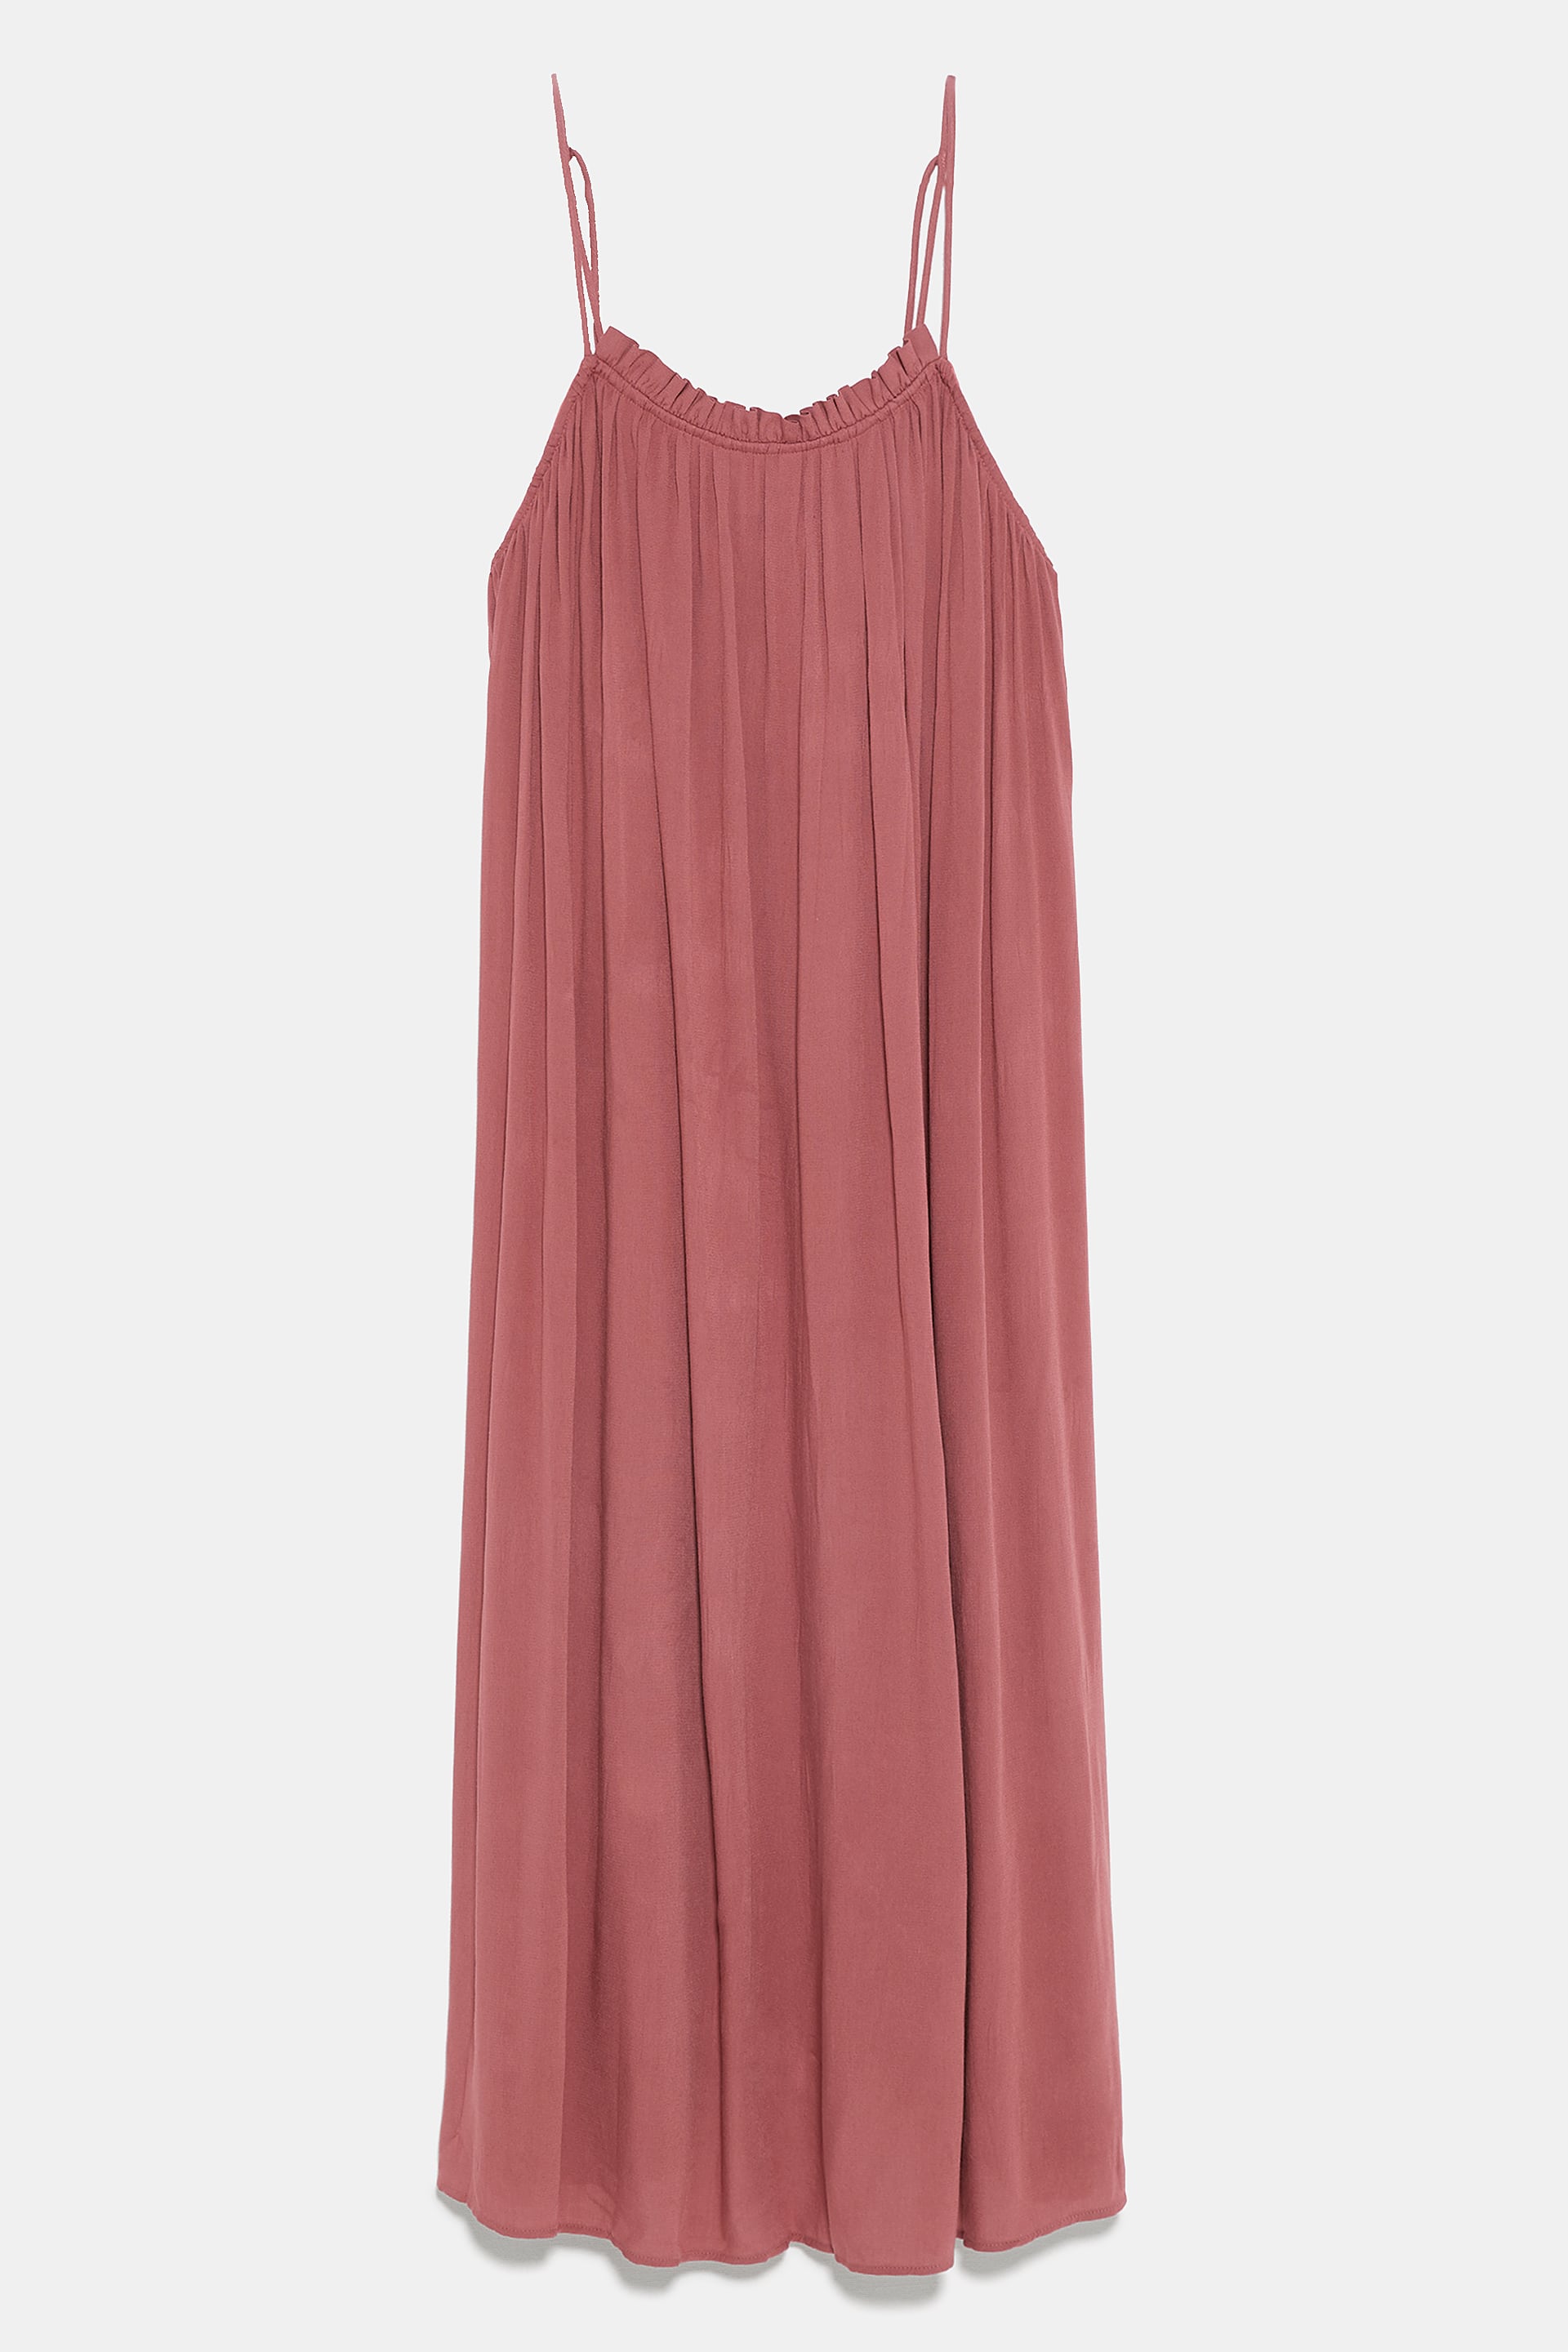 Vestido, Zara, €29,95 1